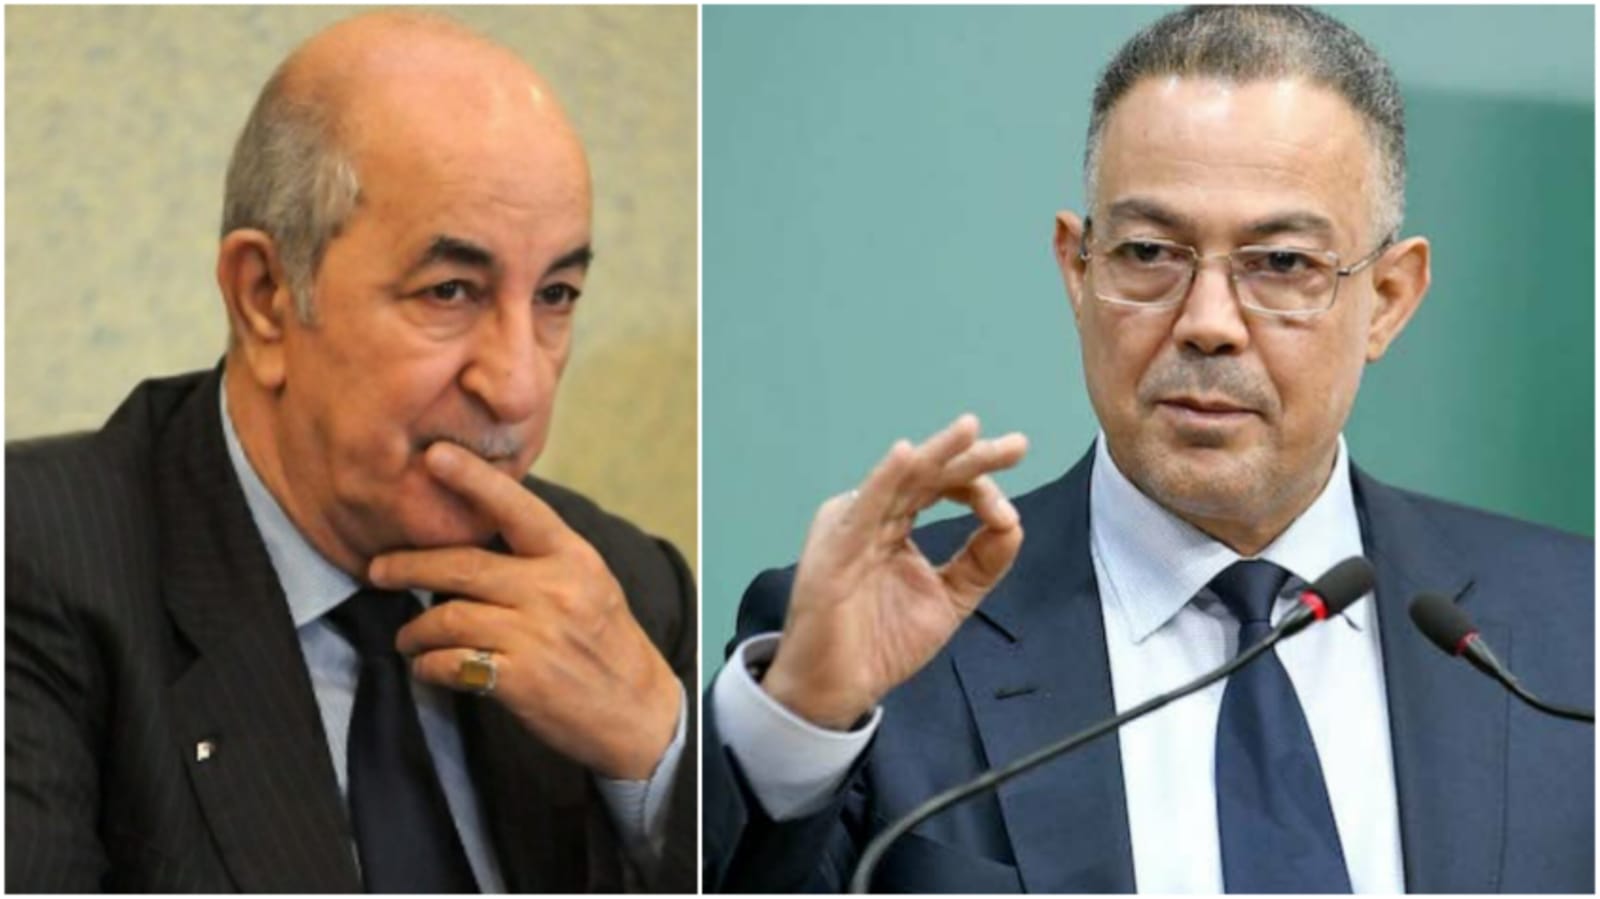 المغرب يفوز بتنظيم كأس إفريقيا 2025 على حساب الجزائر.. وغضب جزائري كبير بعد الإعلان